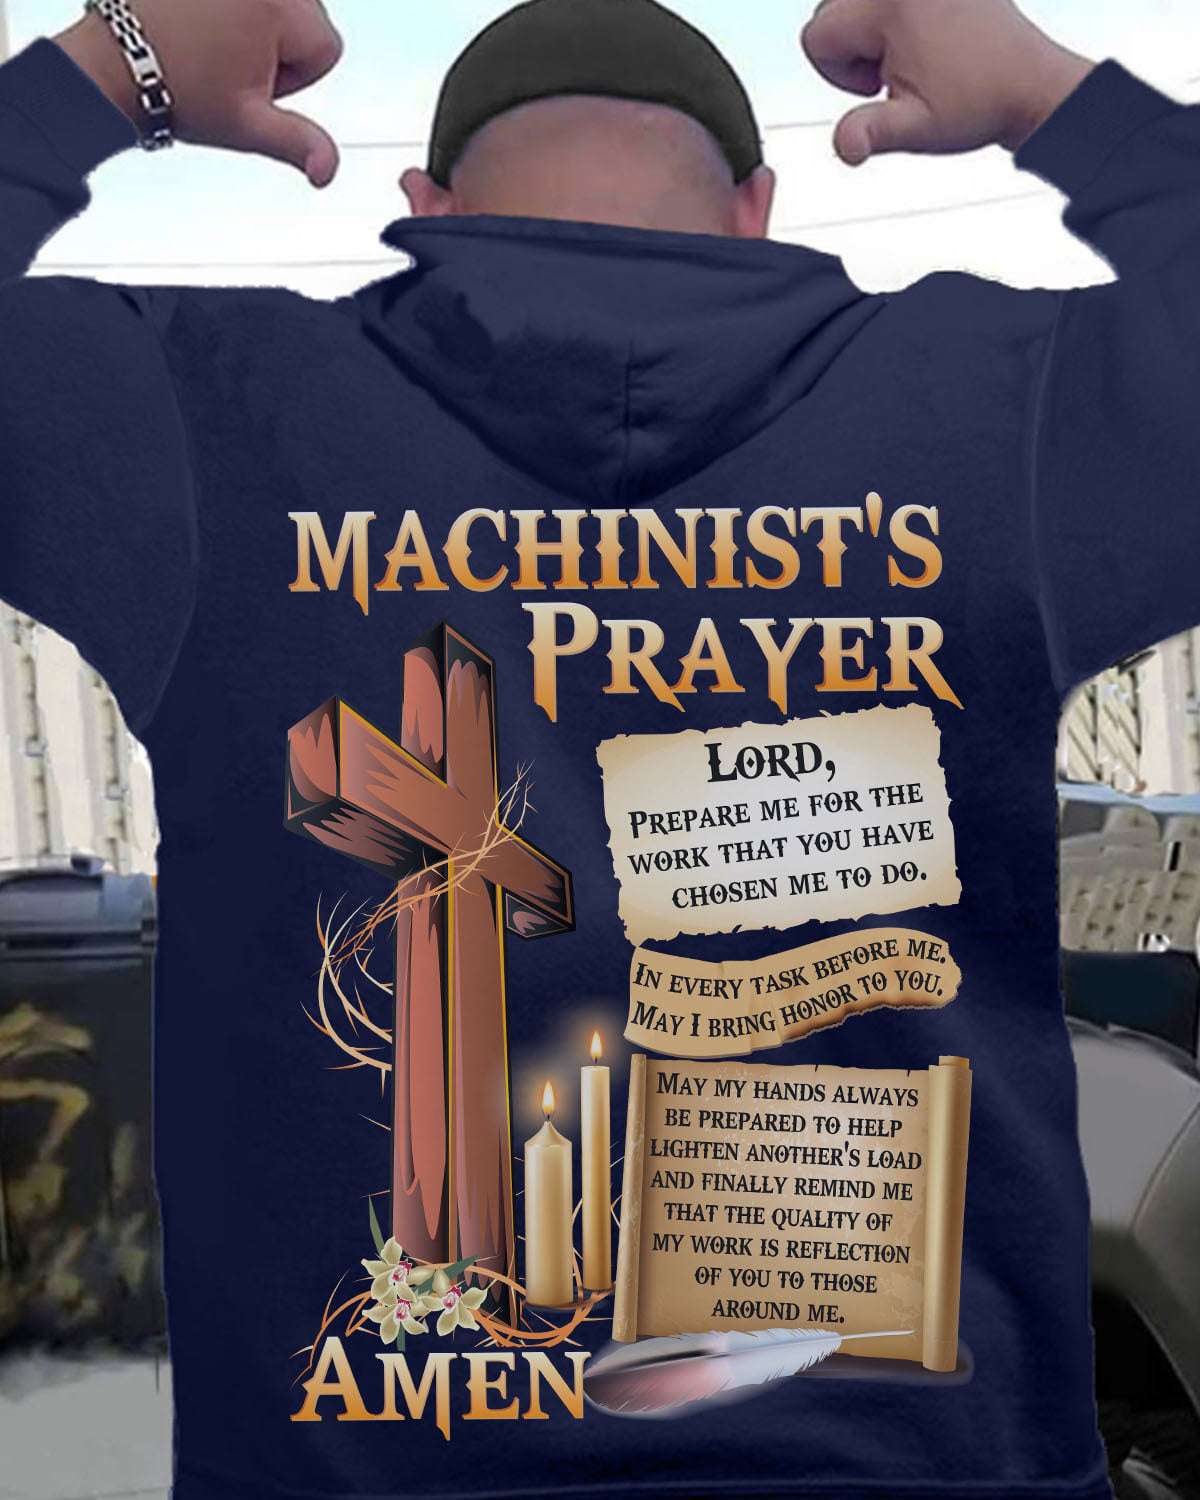 Machinist's prayer - Manchinist the job, Machinist and Jesus